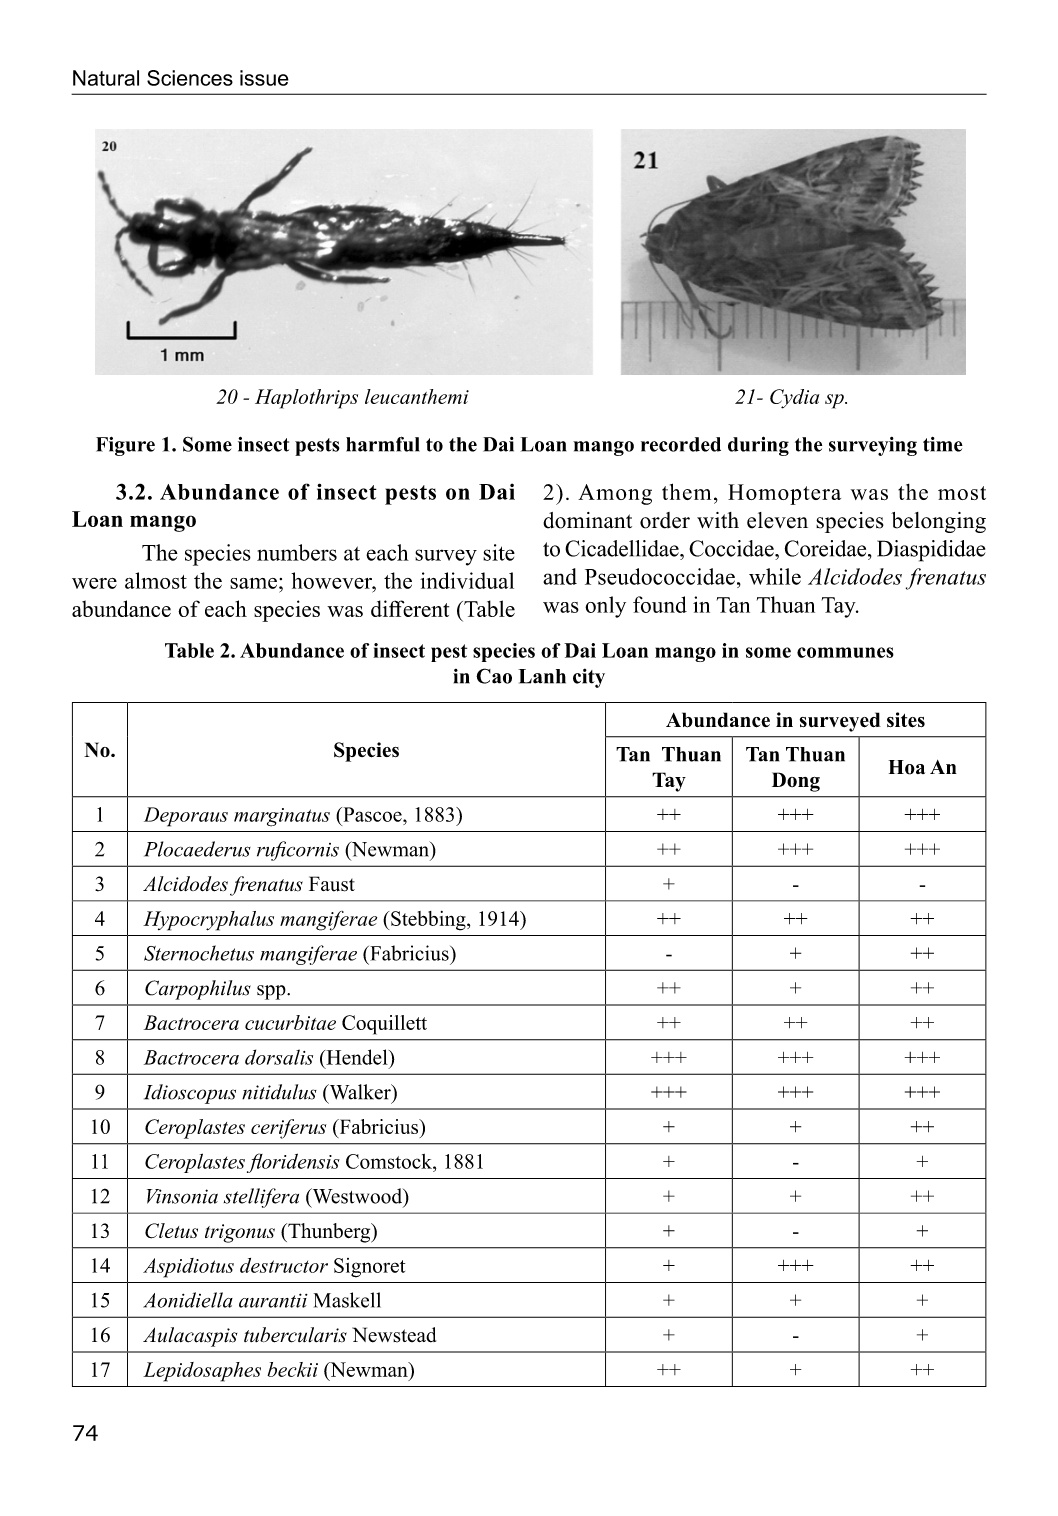 Dẫn liệu ban đầu về thành phần loài côn trùng gây hại trên xoài Đài Loan tại Thành phố cao lãnh, tỉnh Đồng Tháp, Việt Nam trang 7